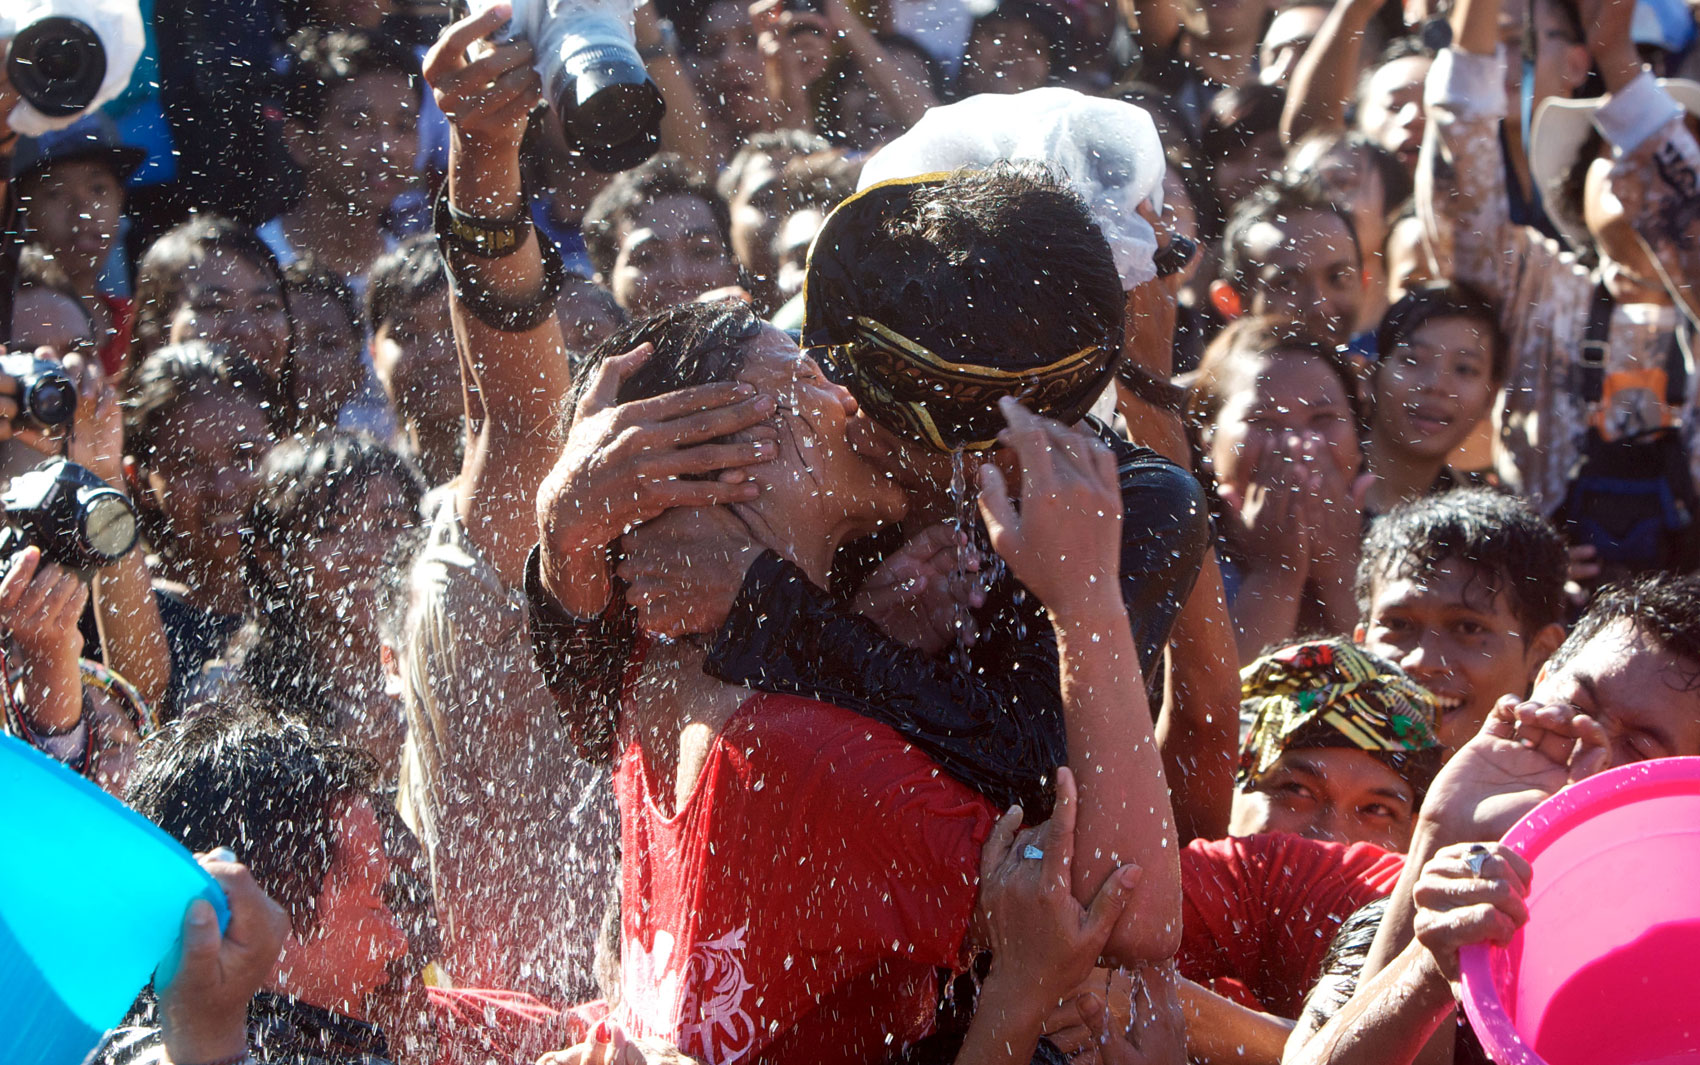 Casal se beija em meio à água atirada pela multidão no festival do beijo Omed Omedan, em Denpasar, na ilha de Bali, Indonésia. Os moradores acreditam que o festival anual garante saúde e boa sorte aos seus participantes.